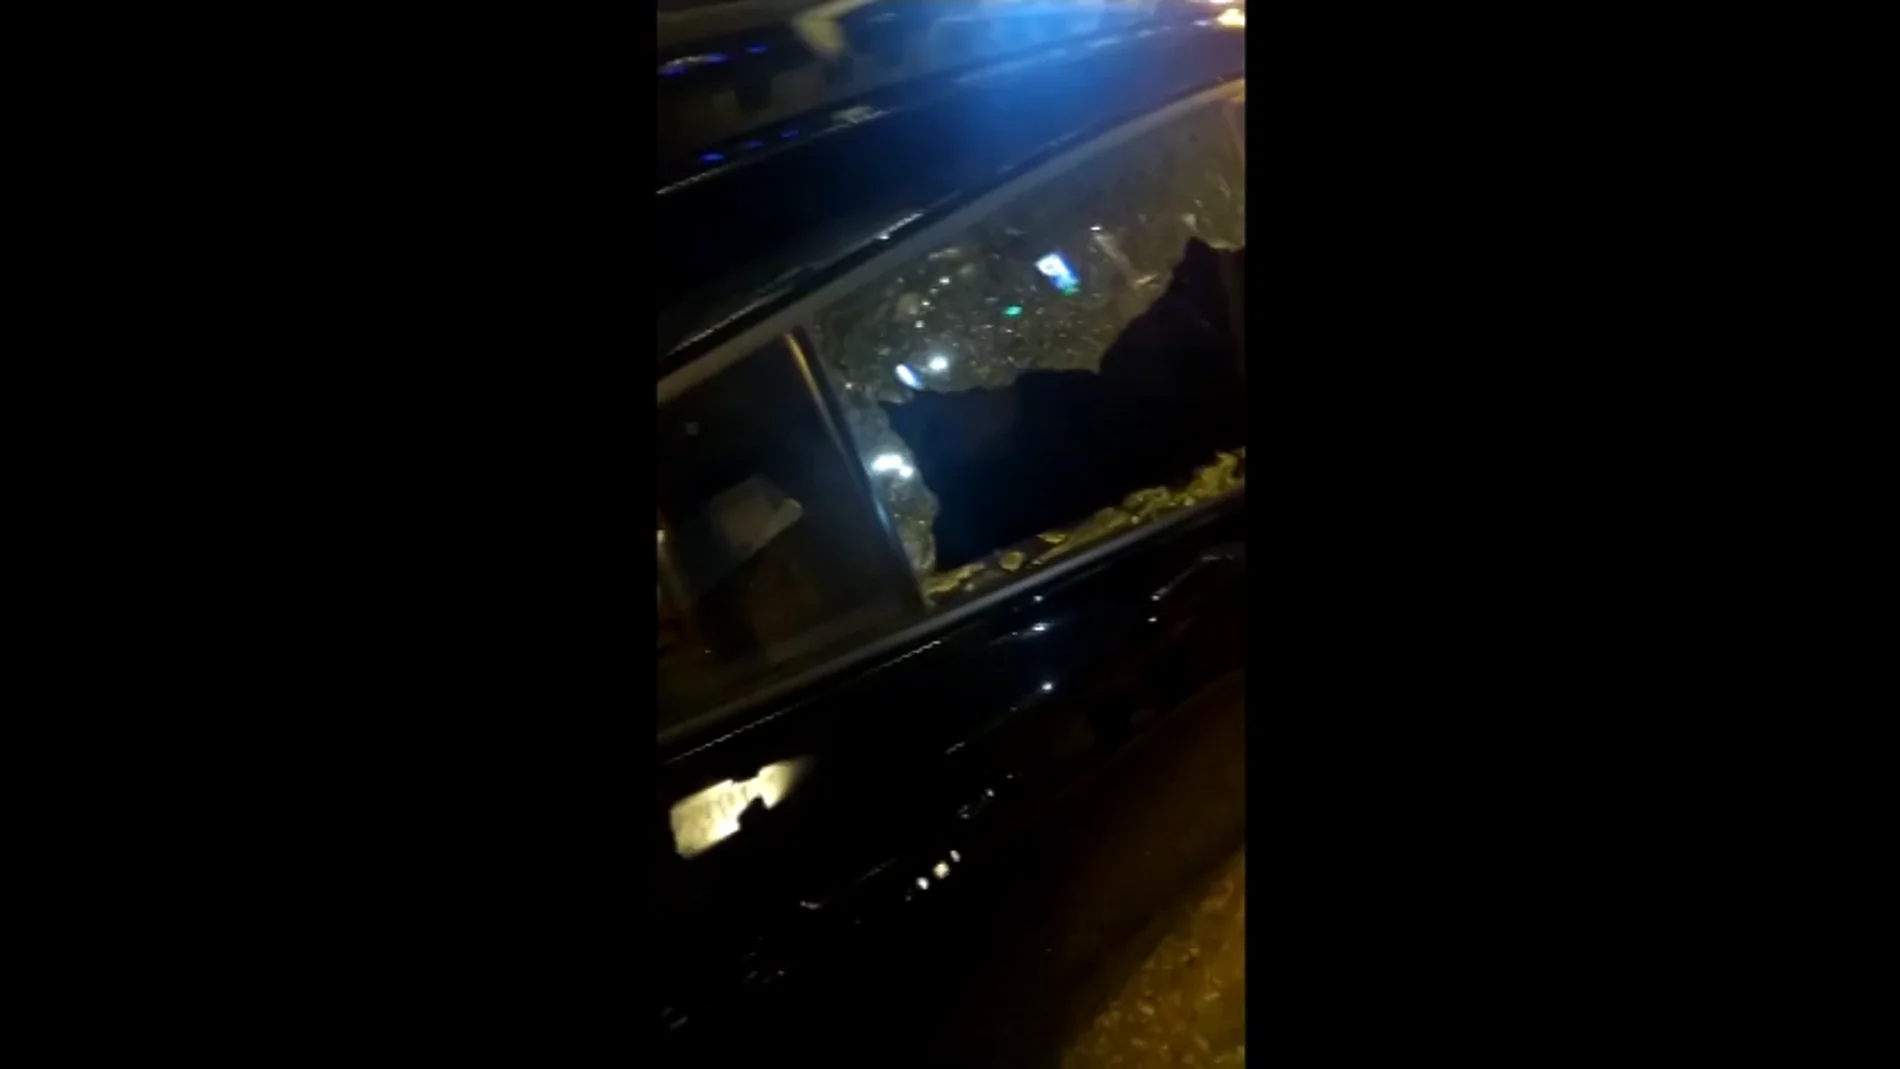 Huelga de taxi: destrozan el cristal de un coche VTC lanzándole una canica en pleno centro de Madrid